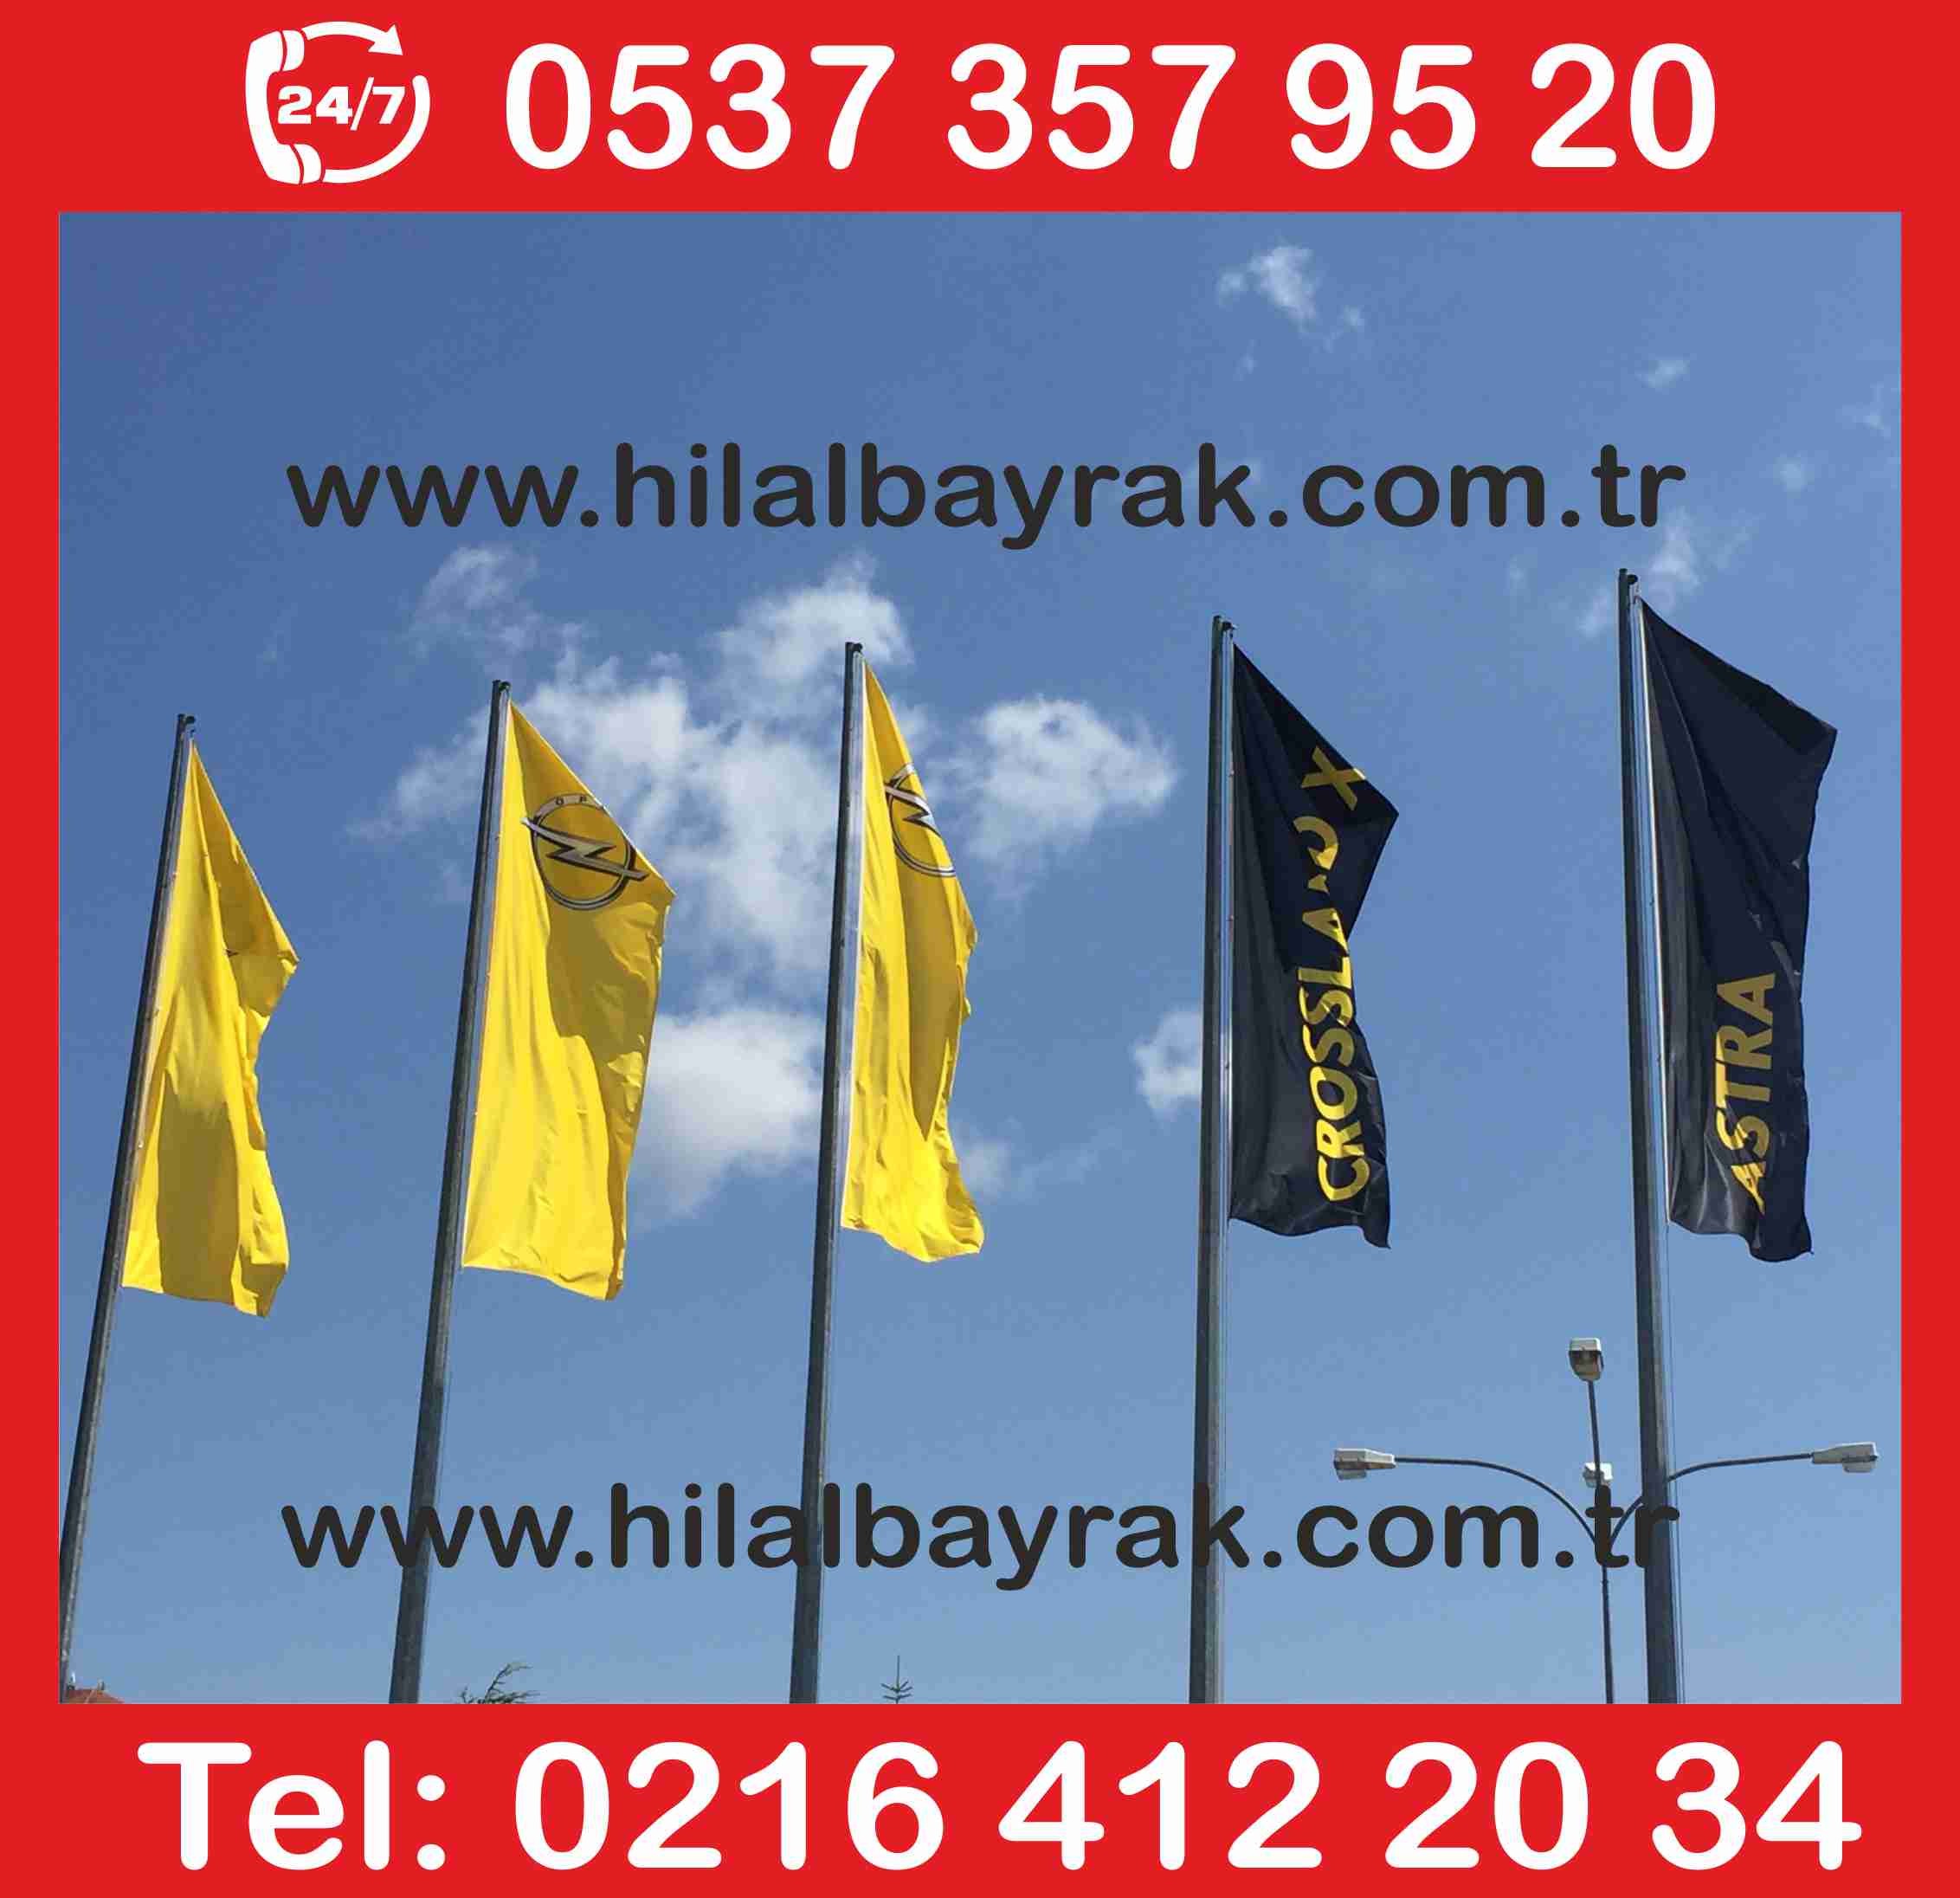 gönder flama bayrak satışı Kadıköy, gönder bayrak, gönder bayrak flama bayrak üretimi, gönder bayrak Ümraniye, gönder bayrak imalatı, türk bayrağı, gönder bayrakları, bayrak satışı ACİL 7 24 HİZMET ümraniye